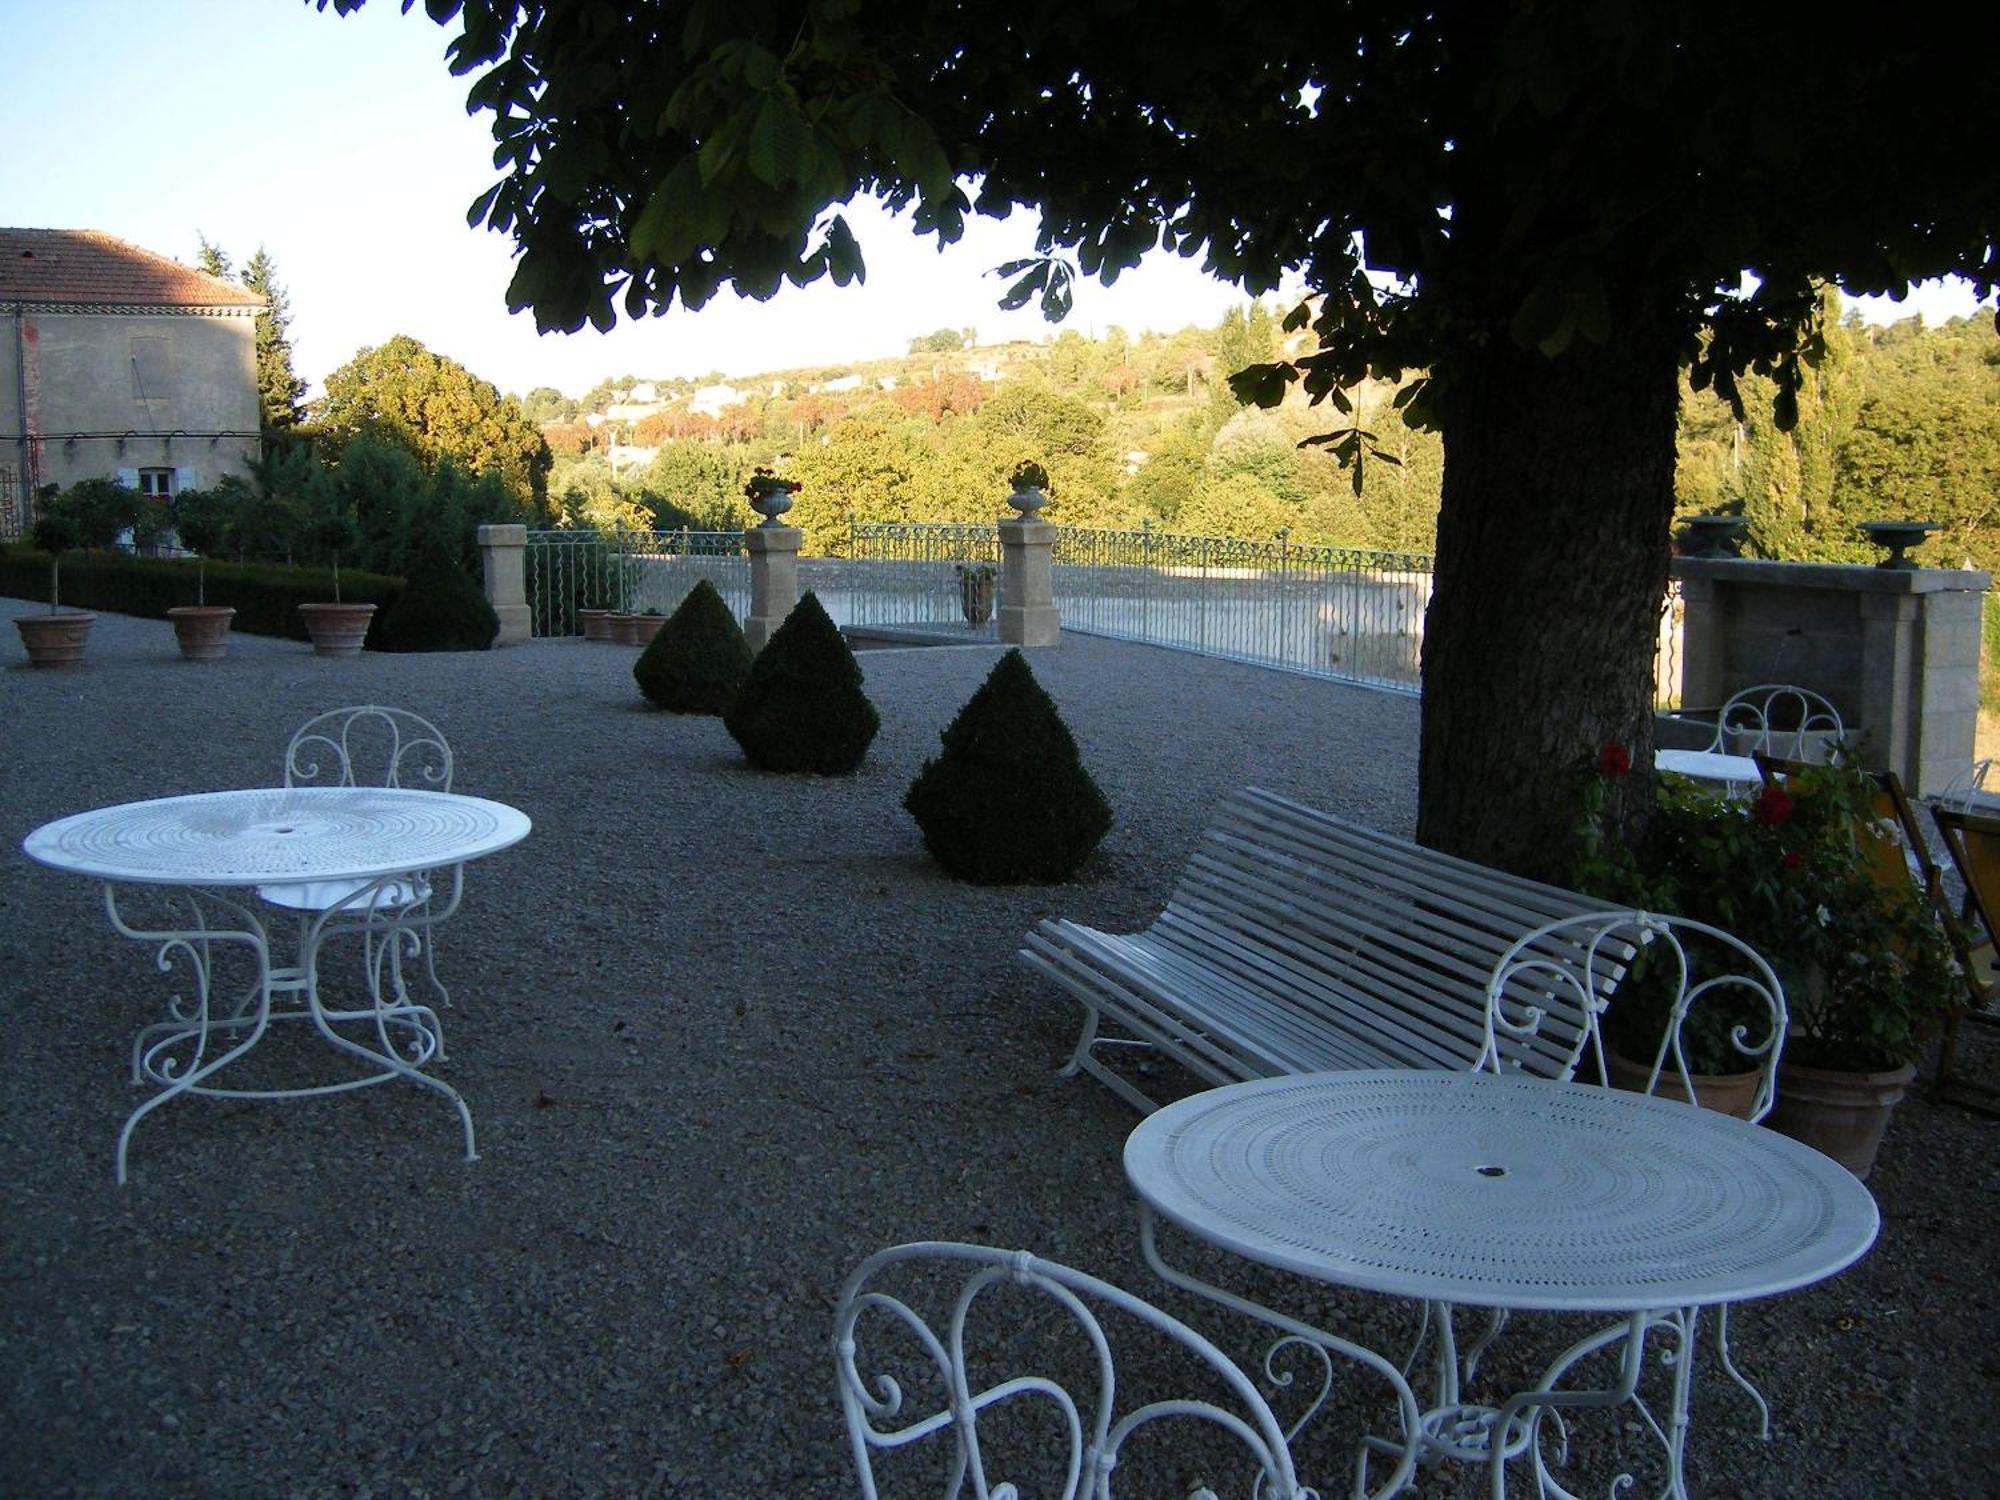 Château du Grand Jardin Valensole Exterior foto